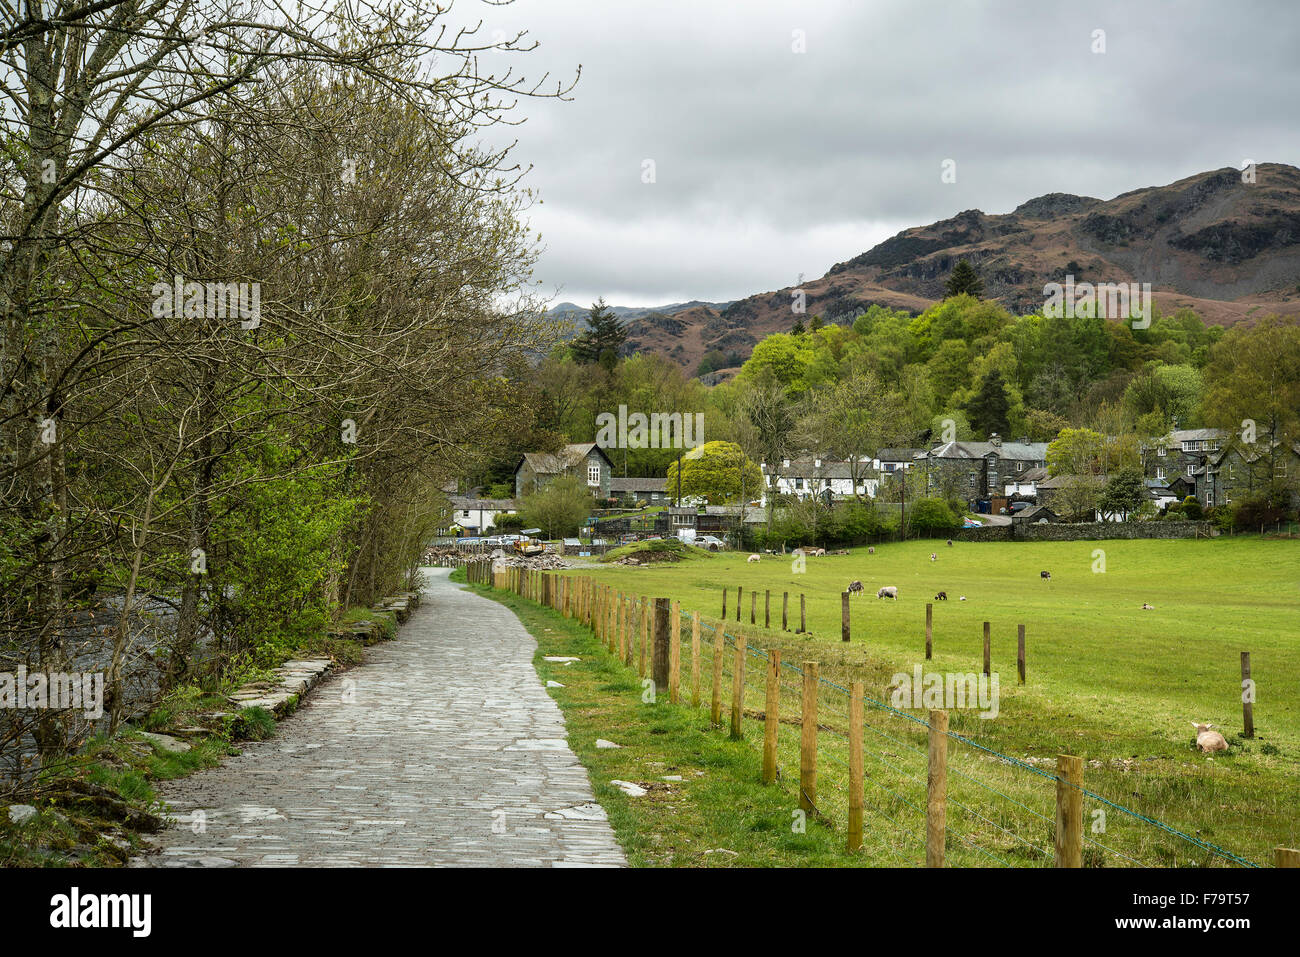 Bellissimo villaggio antico paesaggio immerso tra le colline nel Lake District Foto Stock